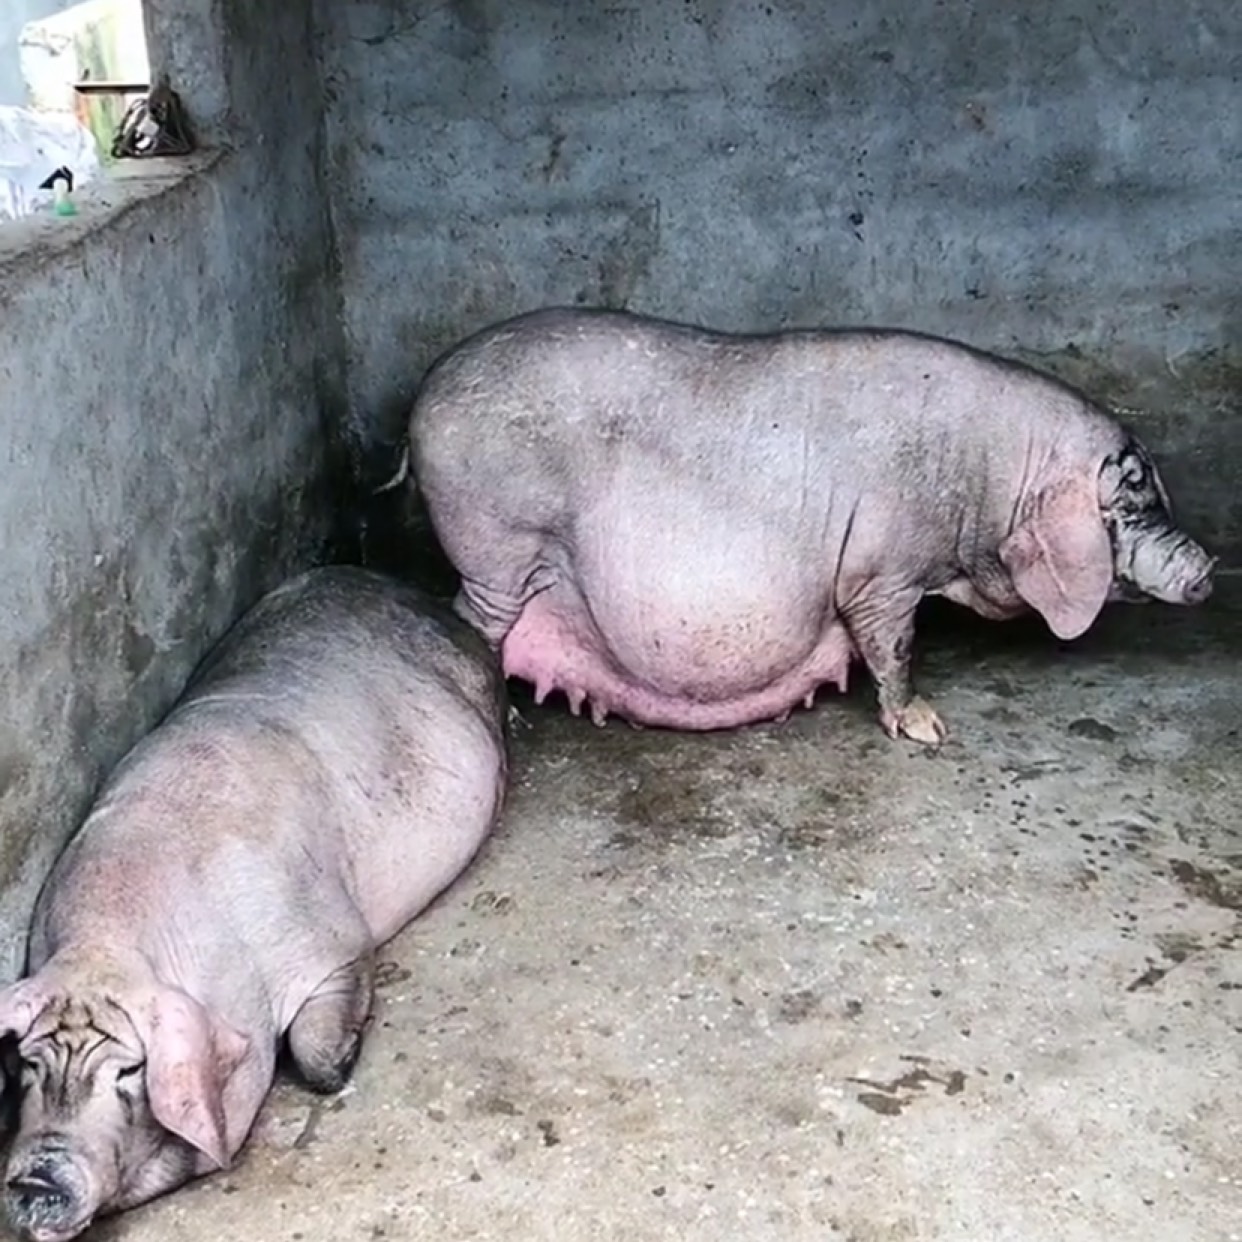 汉普夏猪与太湖杂交图片